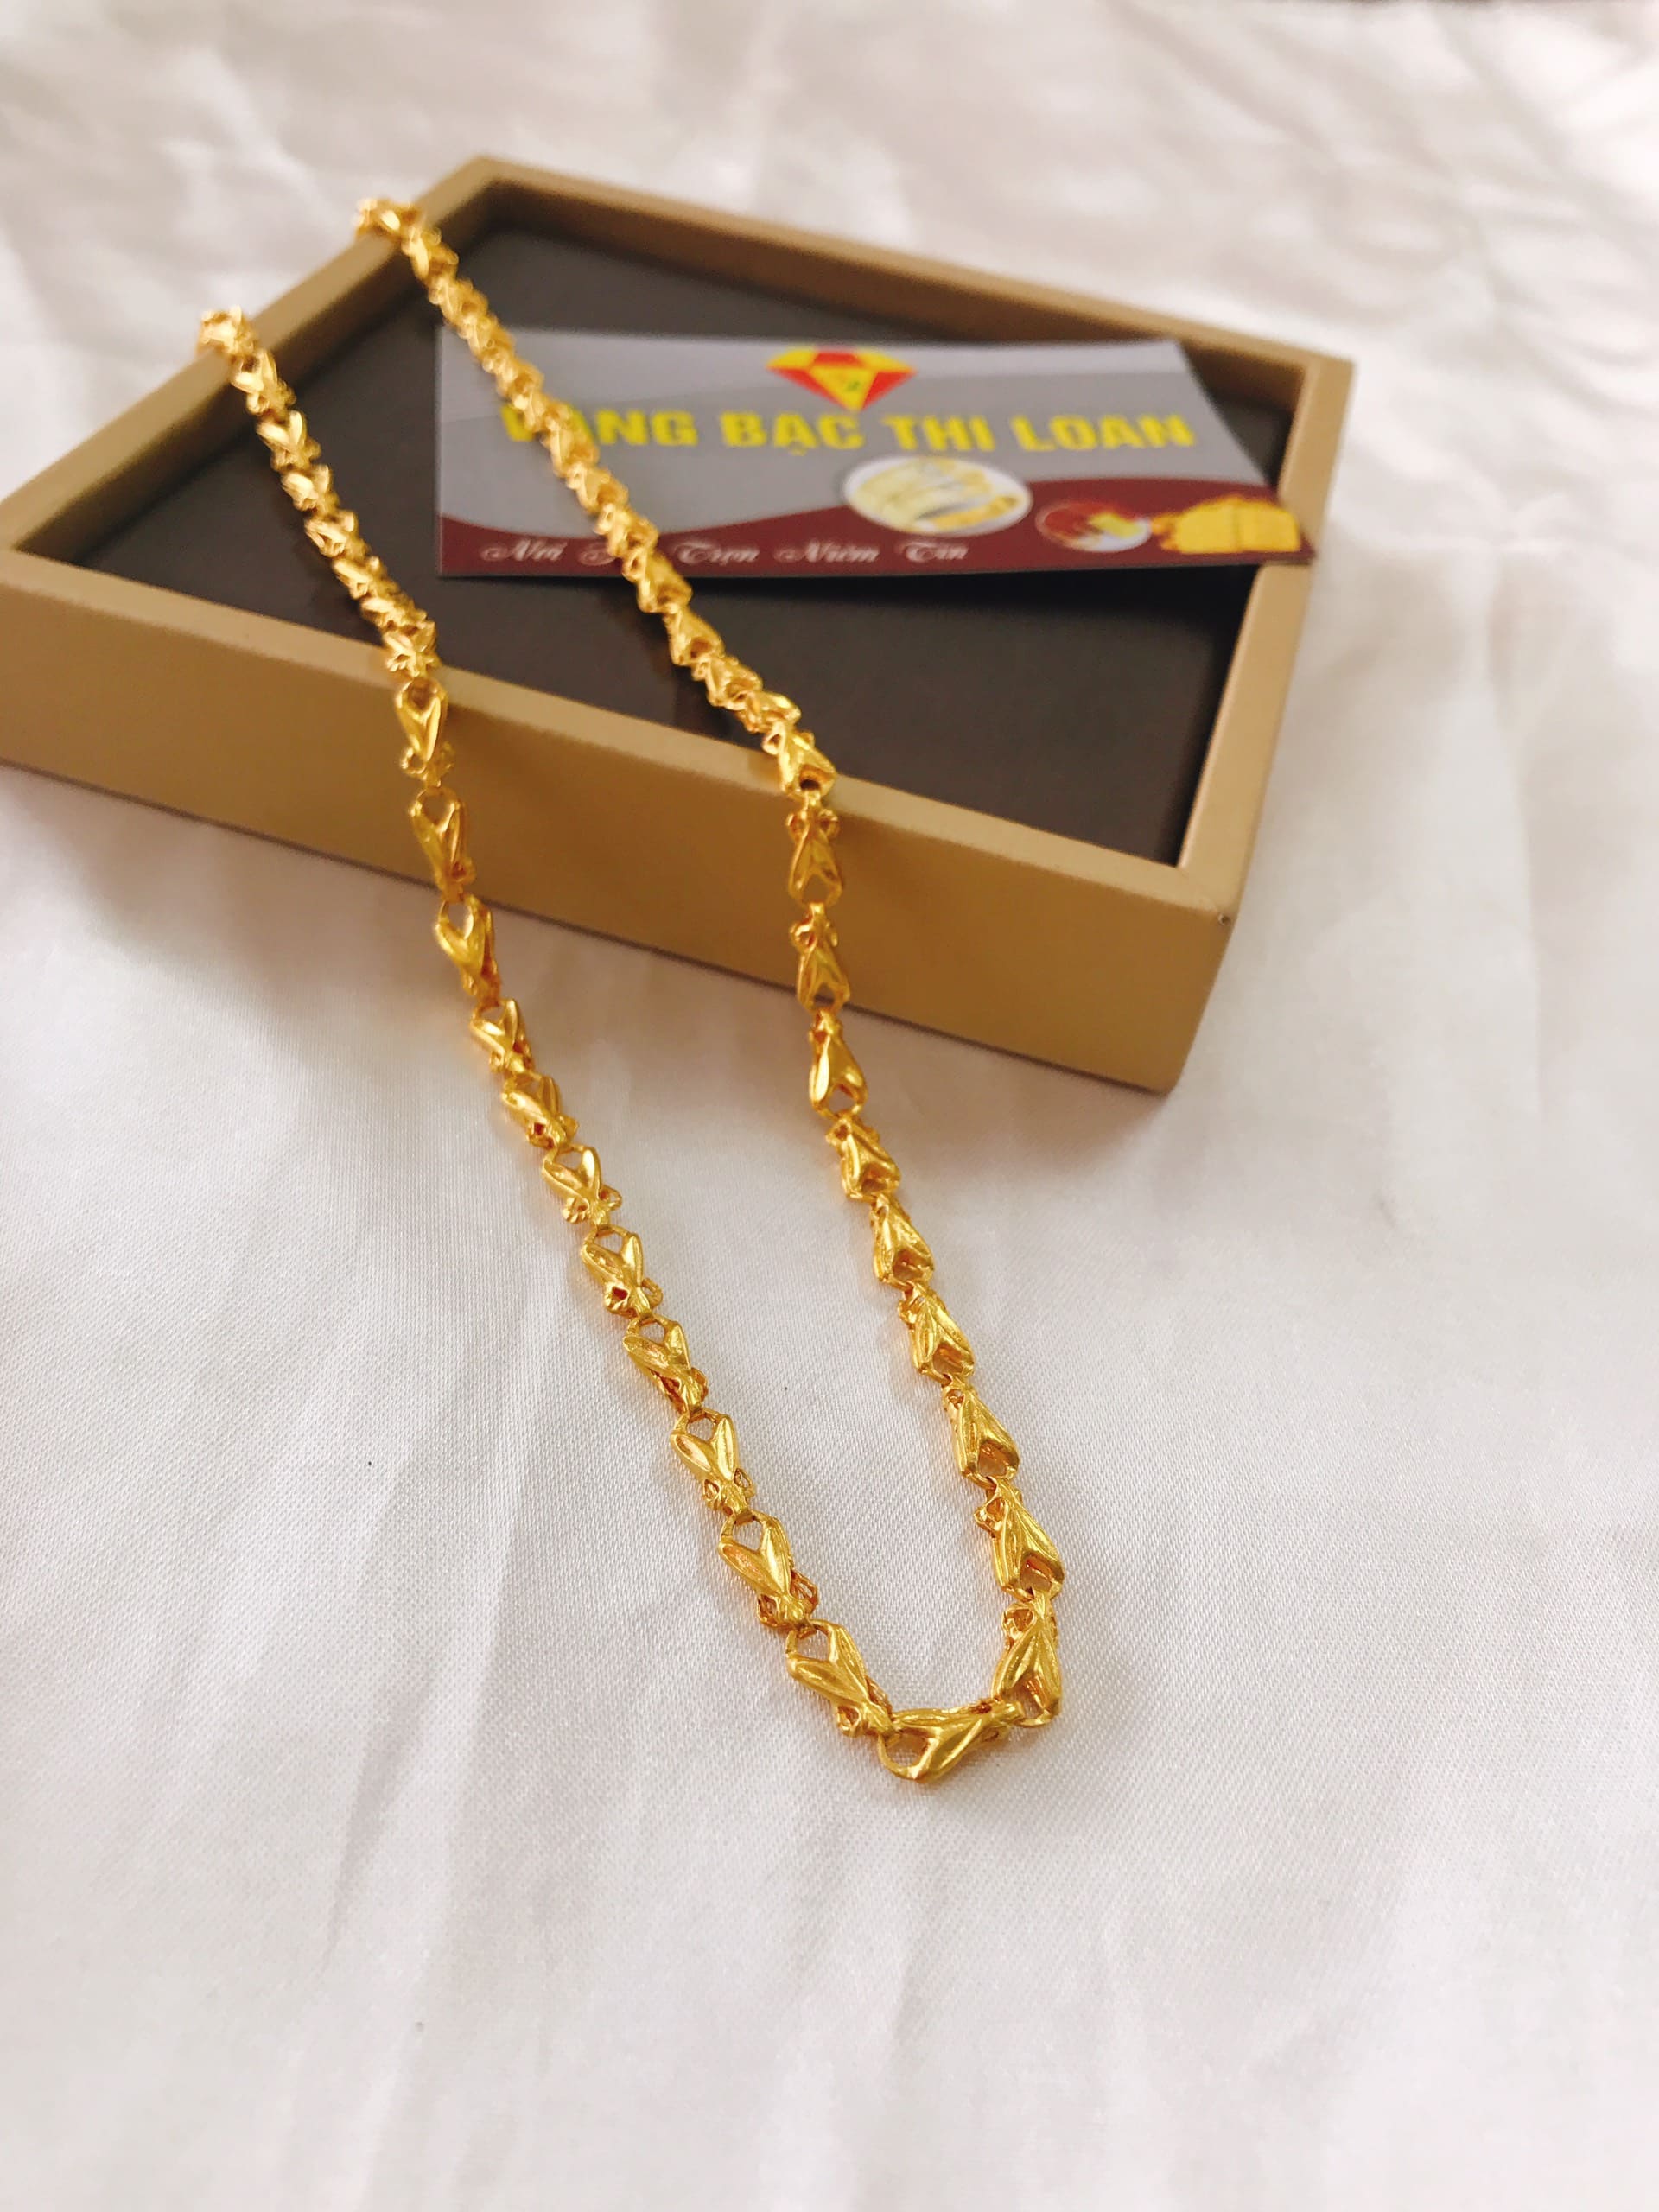 Dây chuyền vàng 24K 5 chỉ là một món quà sang trọng và ý nghĩa để tặng cho người thân, bạn bè hay đối tác kinh doanh của bạn. Với chất liệu vàng 24K tinh khiết và sáng lấp lánh, chiếc dây chuyền này chắc chắn sẽ làm hài lòng mọi người.